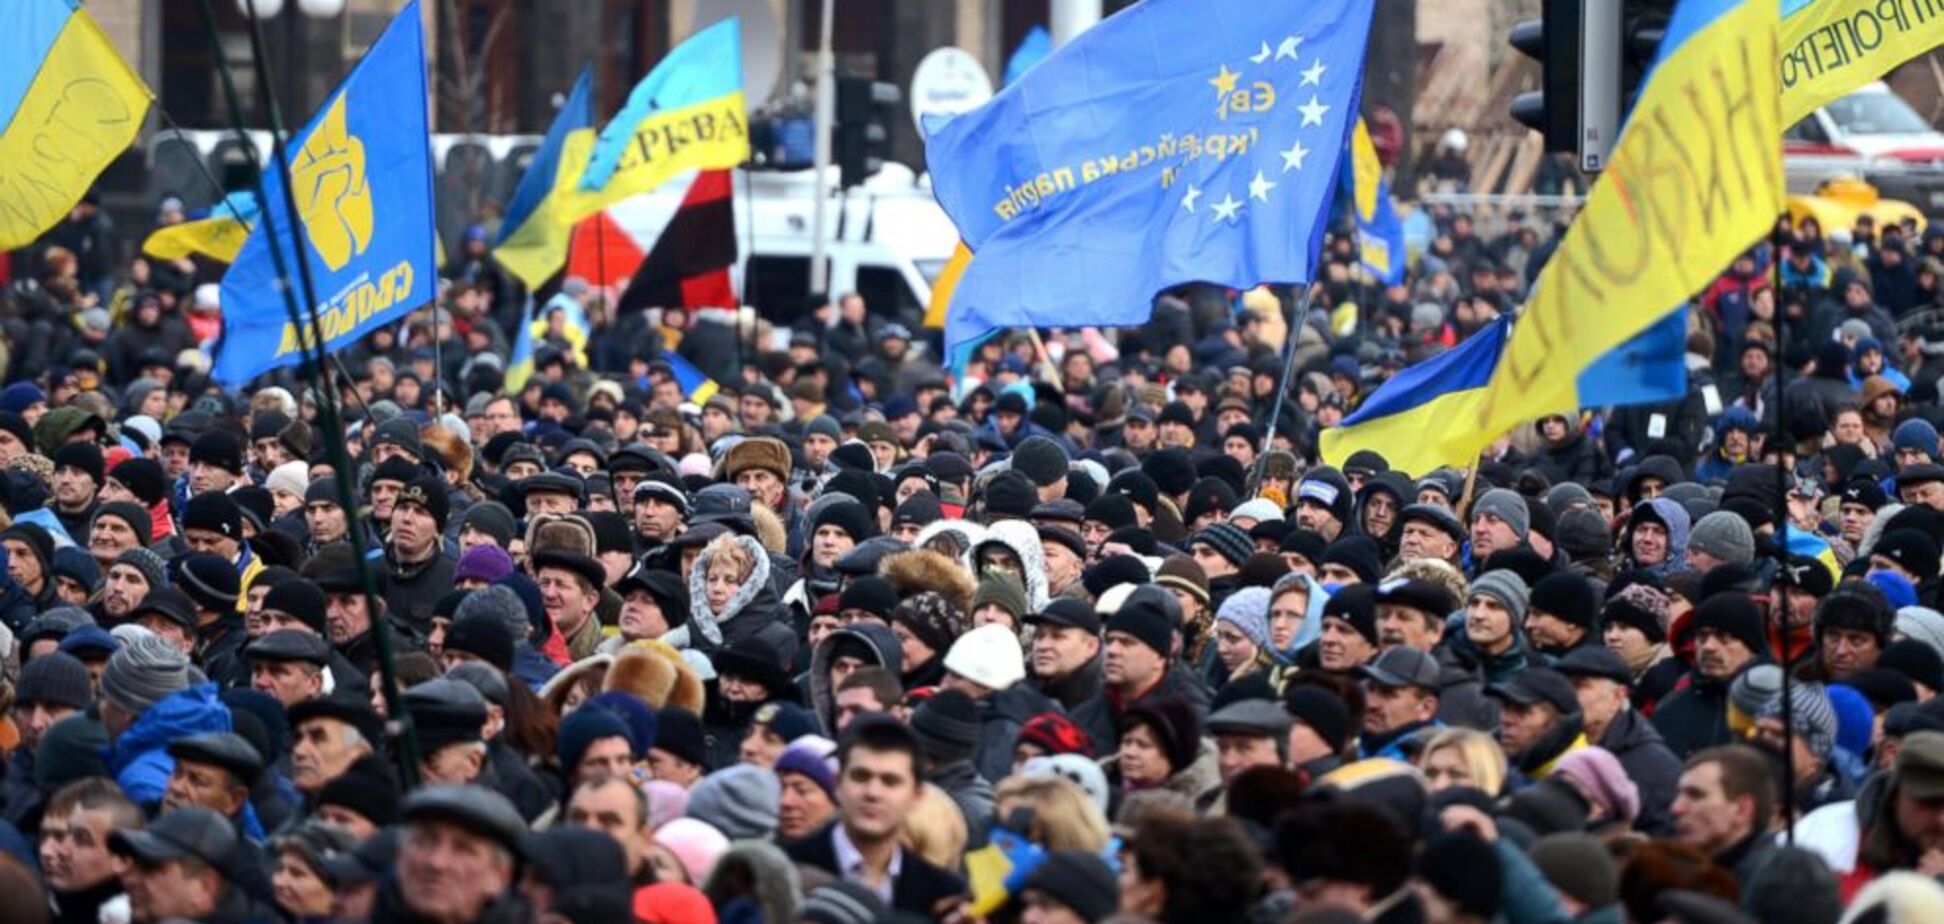 Над Украиной нависла угроза: Тымчук назвал опасную дату